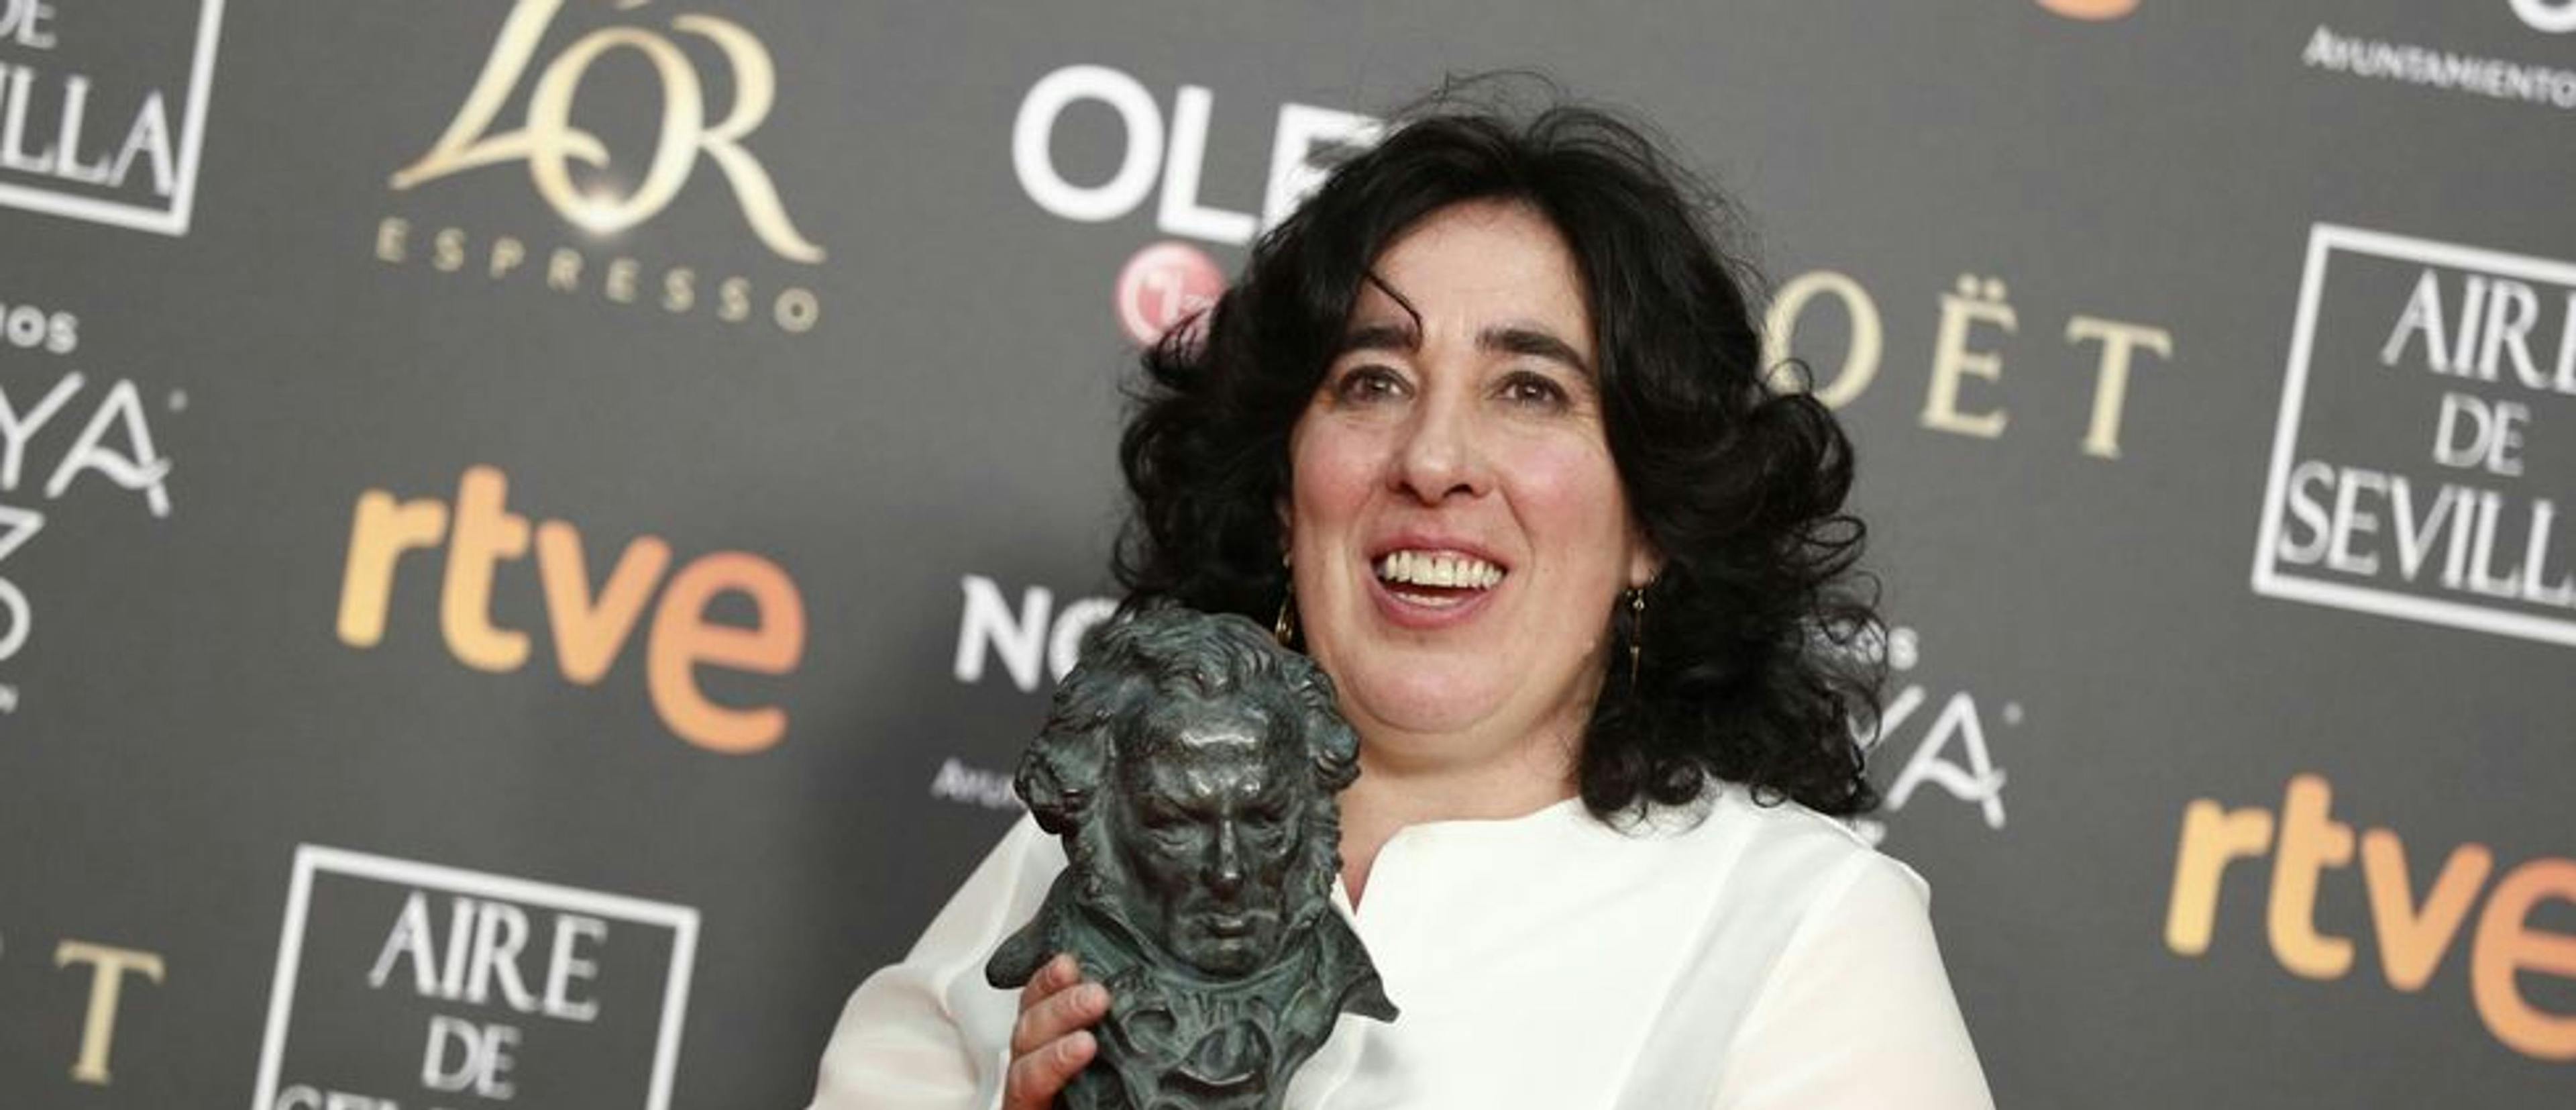 Arantxa Echevarría ganó el Goya por 'Carmen y Lola' en 2019